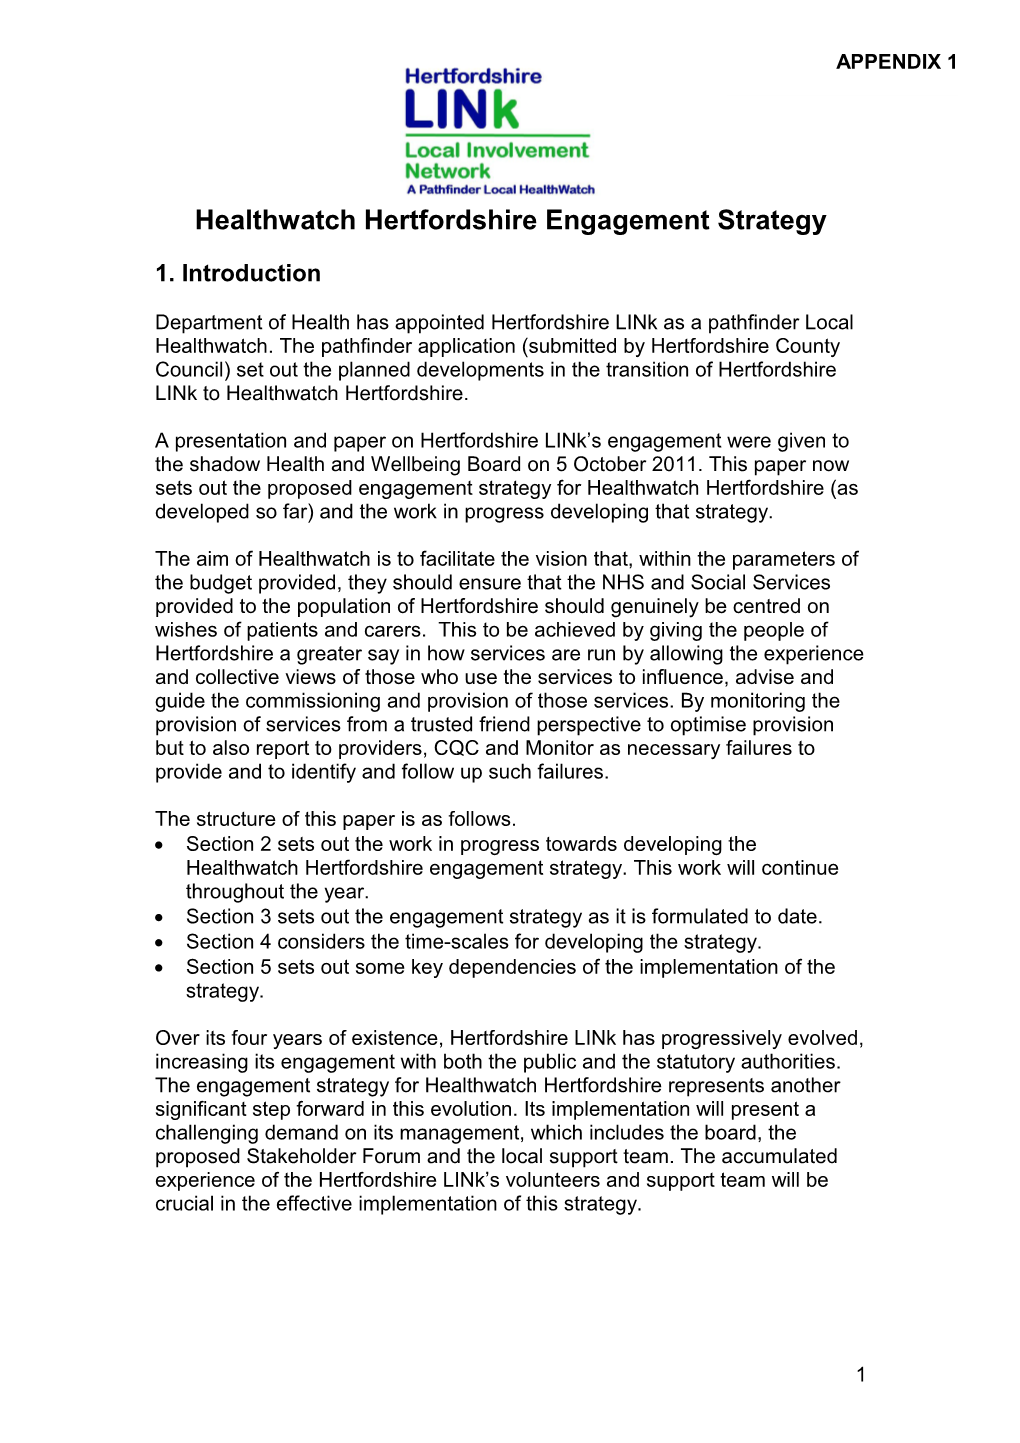 Healthwatch Hertfordshire Engagement Strategy